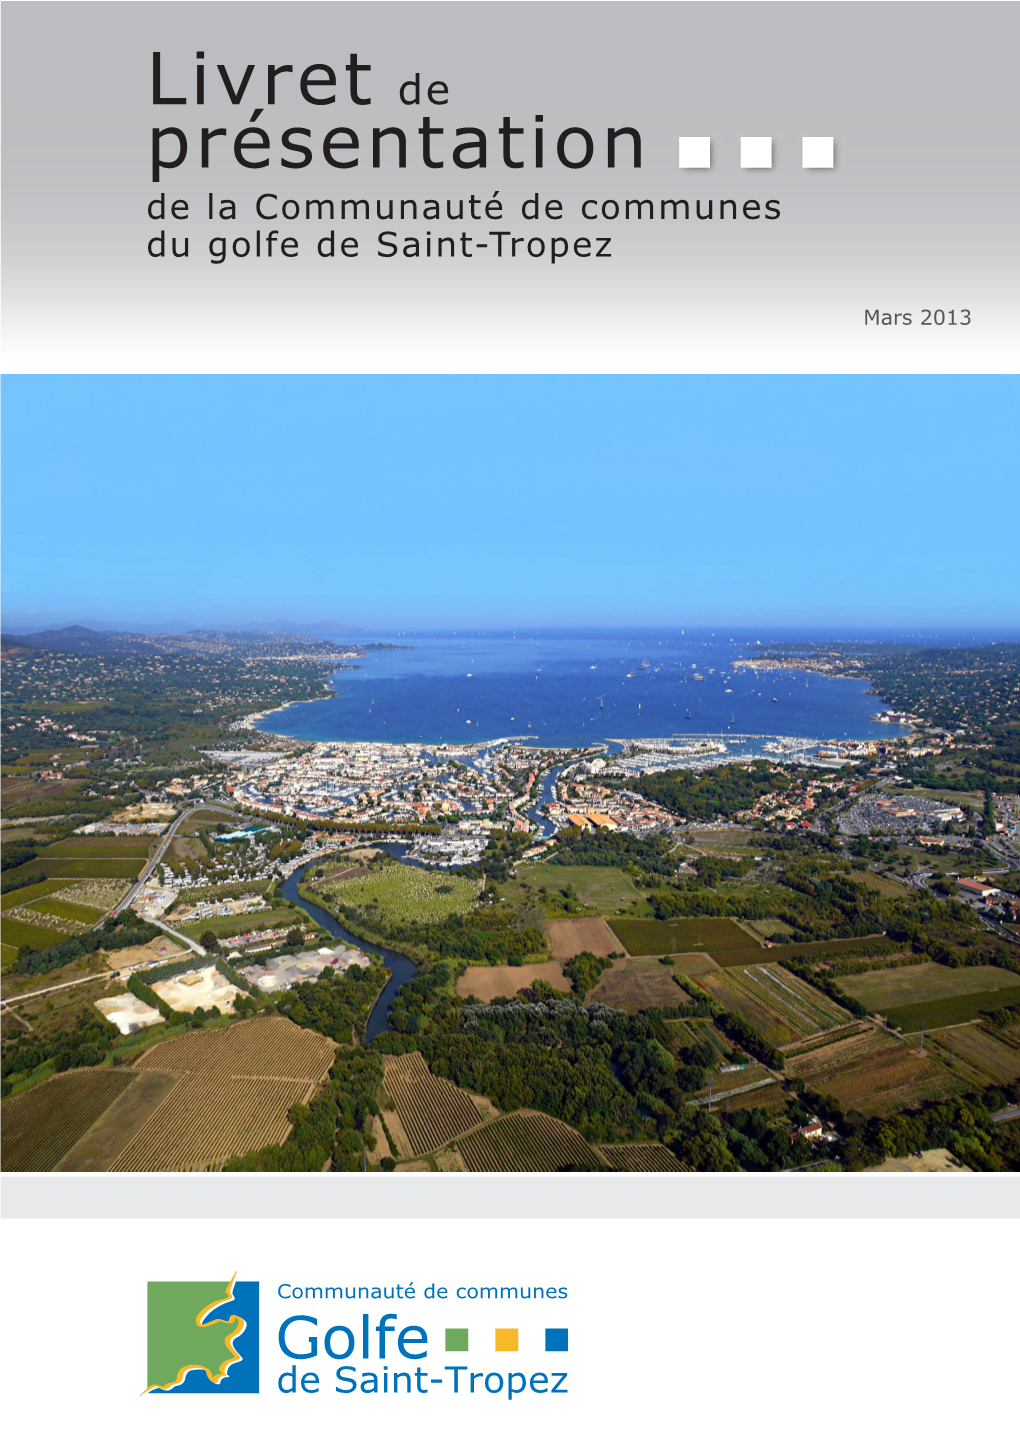 Livret De Présentation De La Communauté De Communes Du Golfe De Saint-Tropez